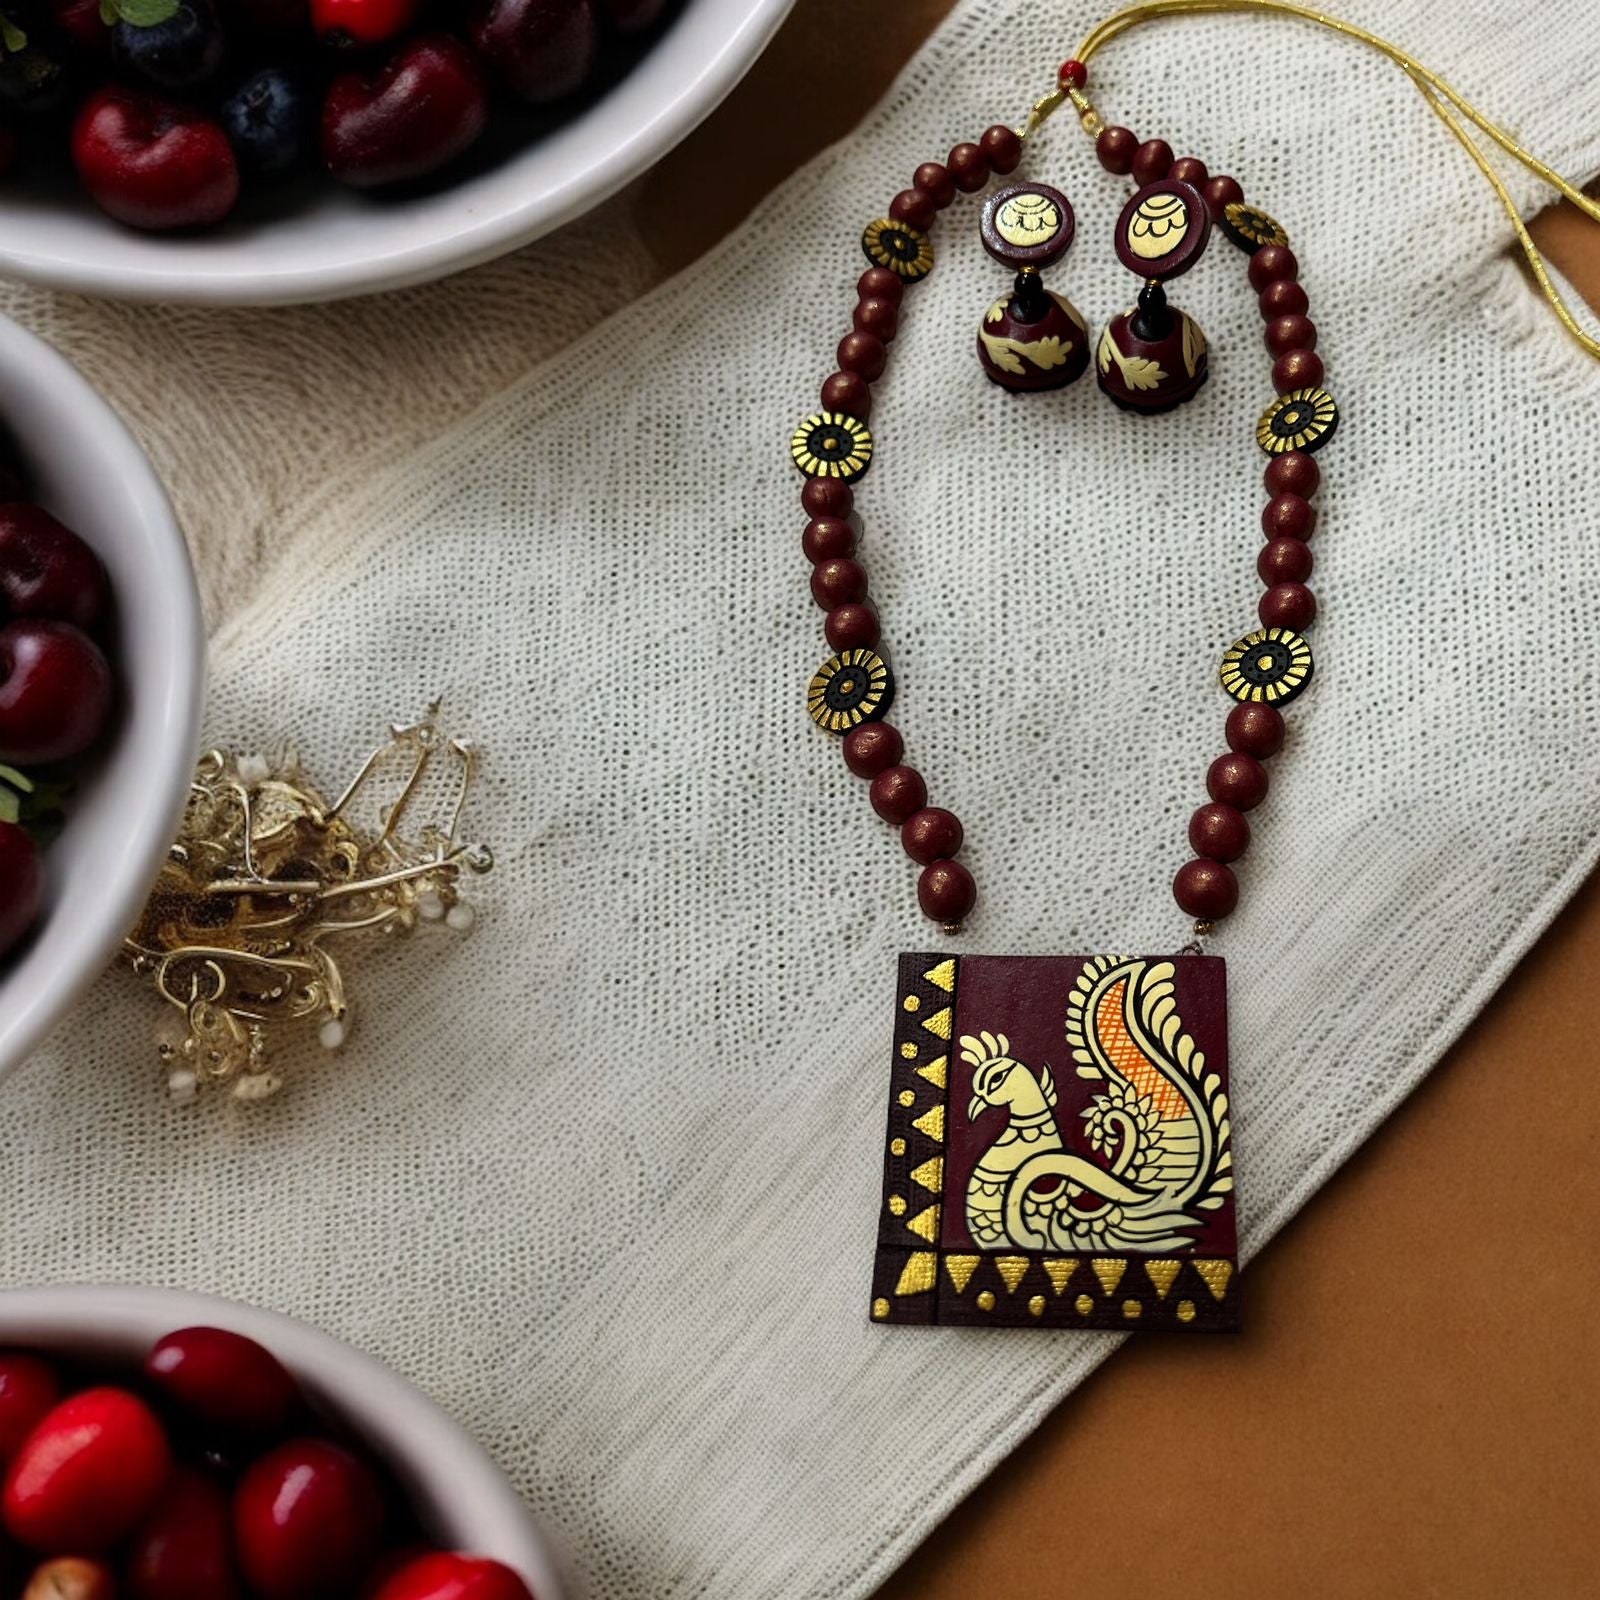 Madhubani designed terrecotta necklace set